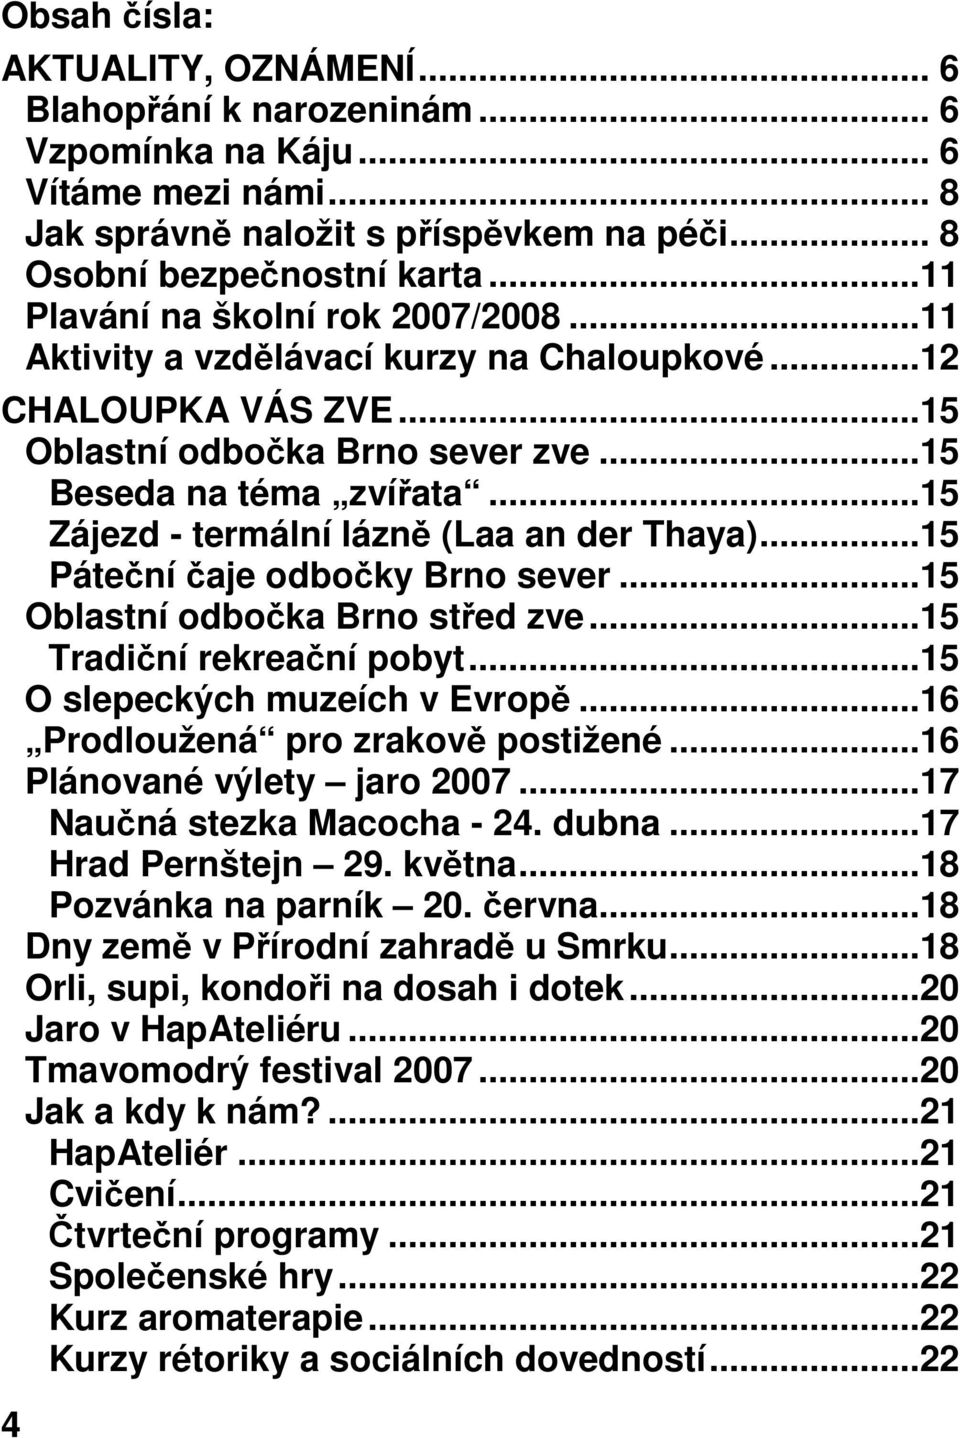 ..15 Zájezd - termální lázně (Laa an der Thaya)...15 Páteční čaje odbočky Brno sever...15 Oblastní odbočka Brno střed zve...15 Tradiční rekreační pobyt...15 O slepeckých muzeích v Evropě.